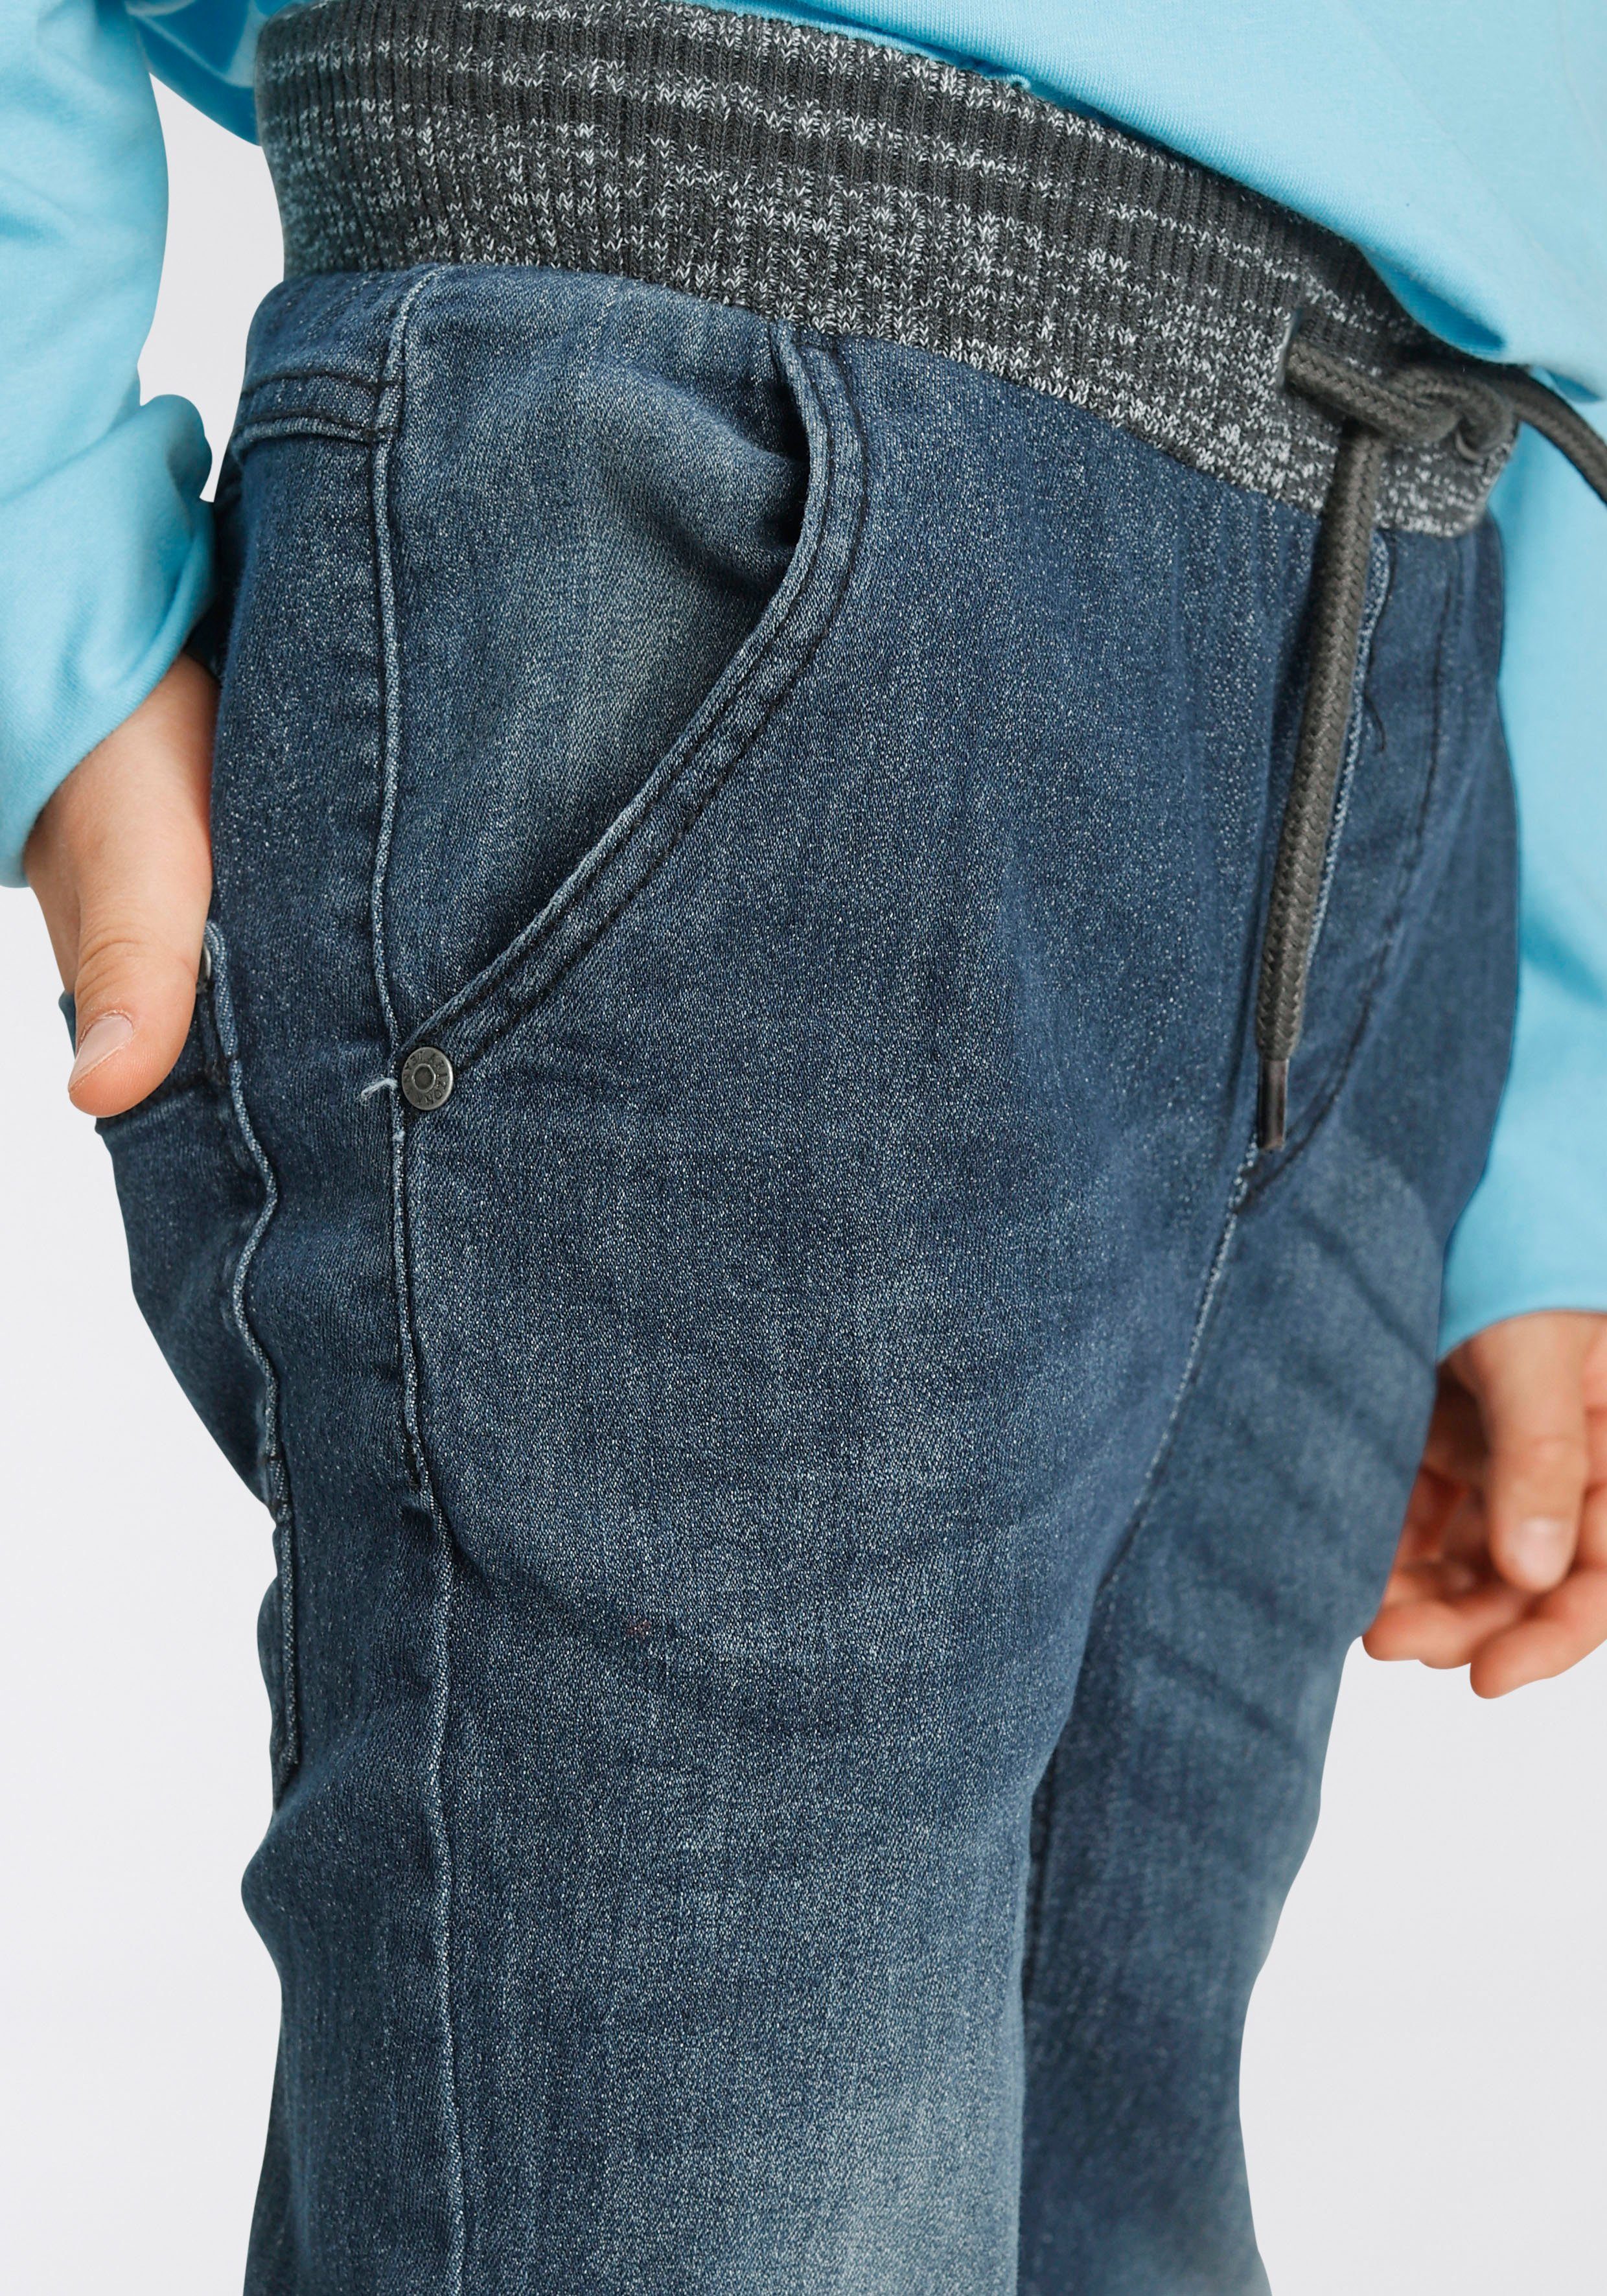 Arizona Stretch-Jeans mit schmalem Rippenbund Beinverlauf mit tollem